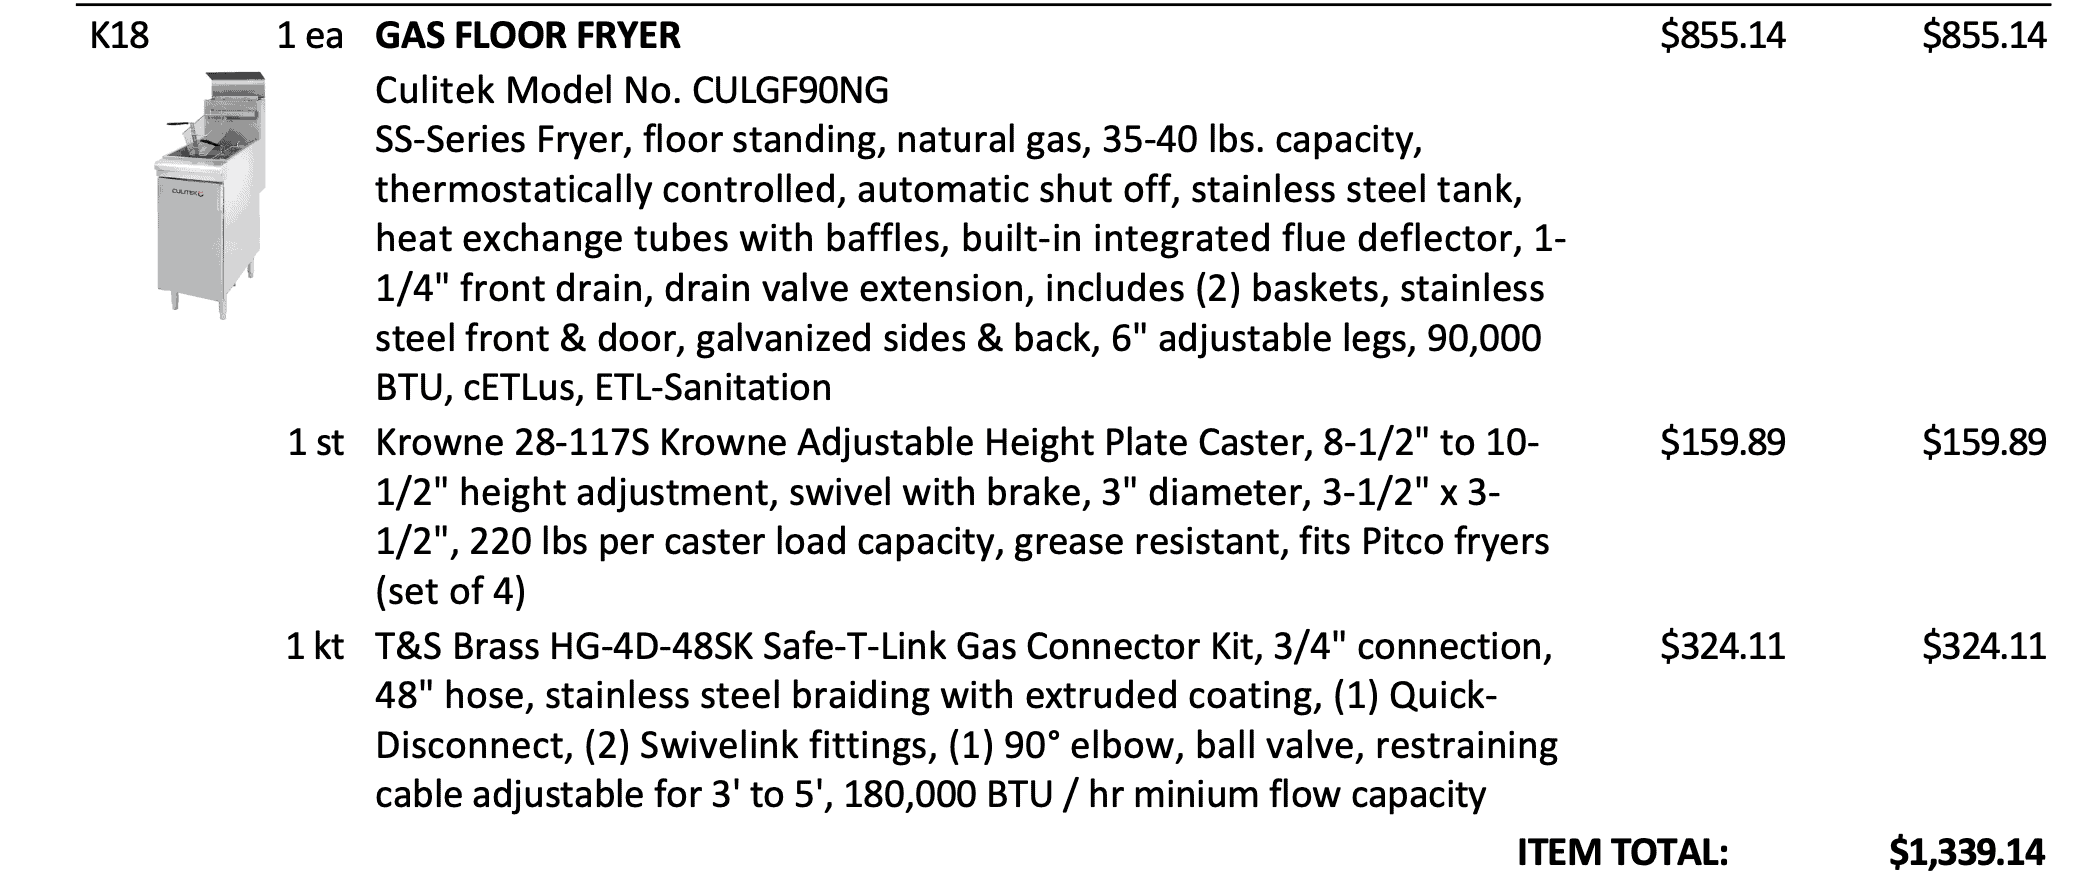 Gas Floor Fryer